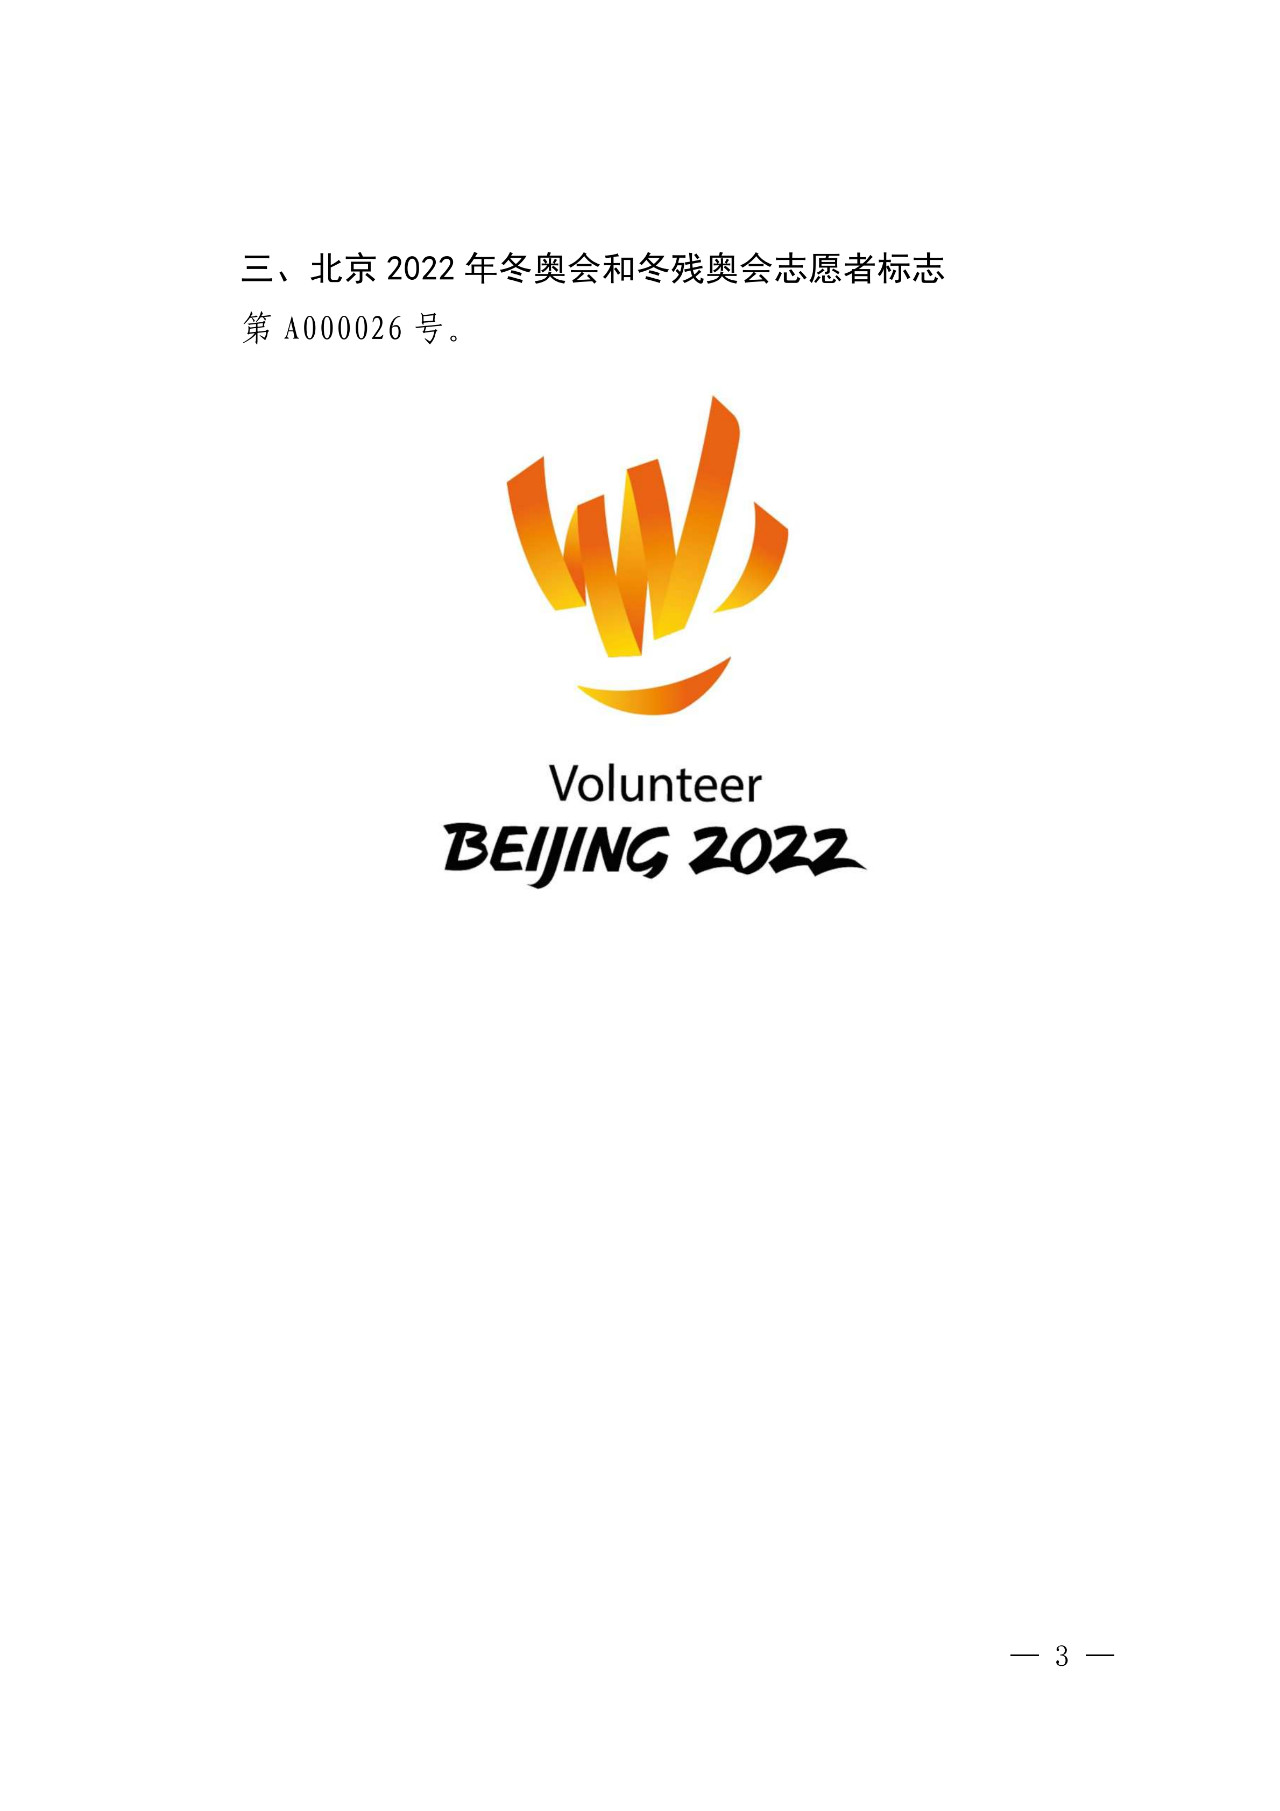 国知局发布“北京2022年冬奥会和冬残奥会吉祥物等7件奥林匹克标志”公告